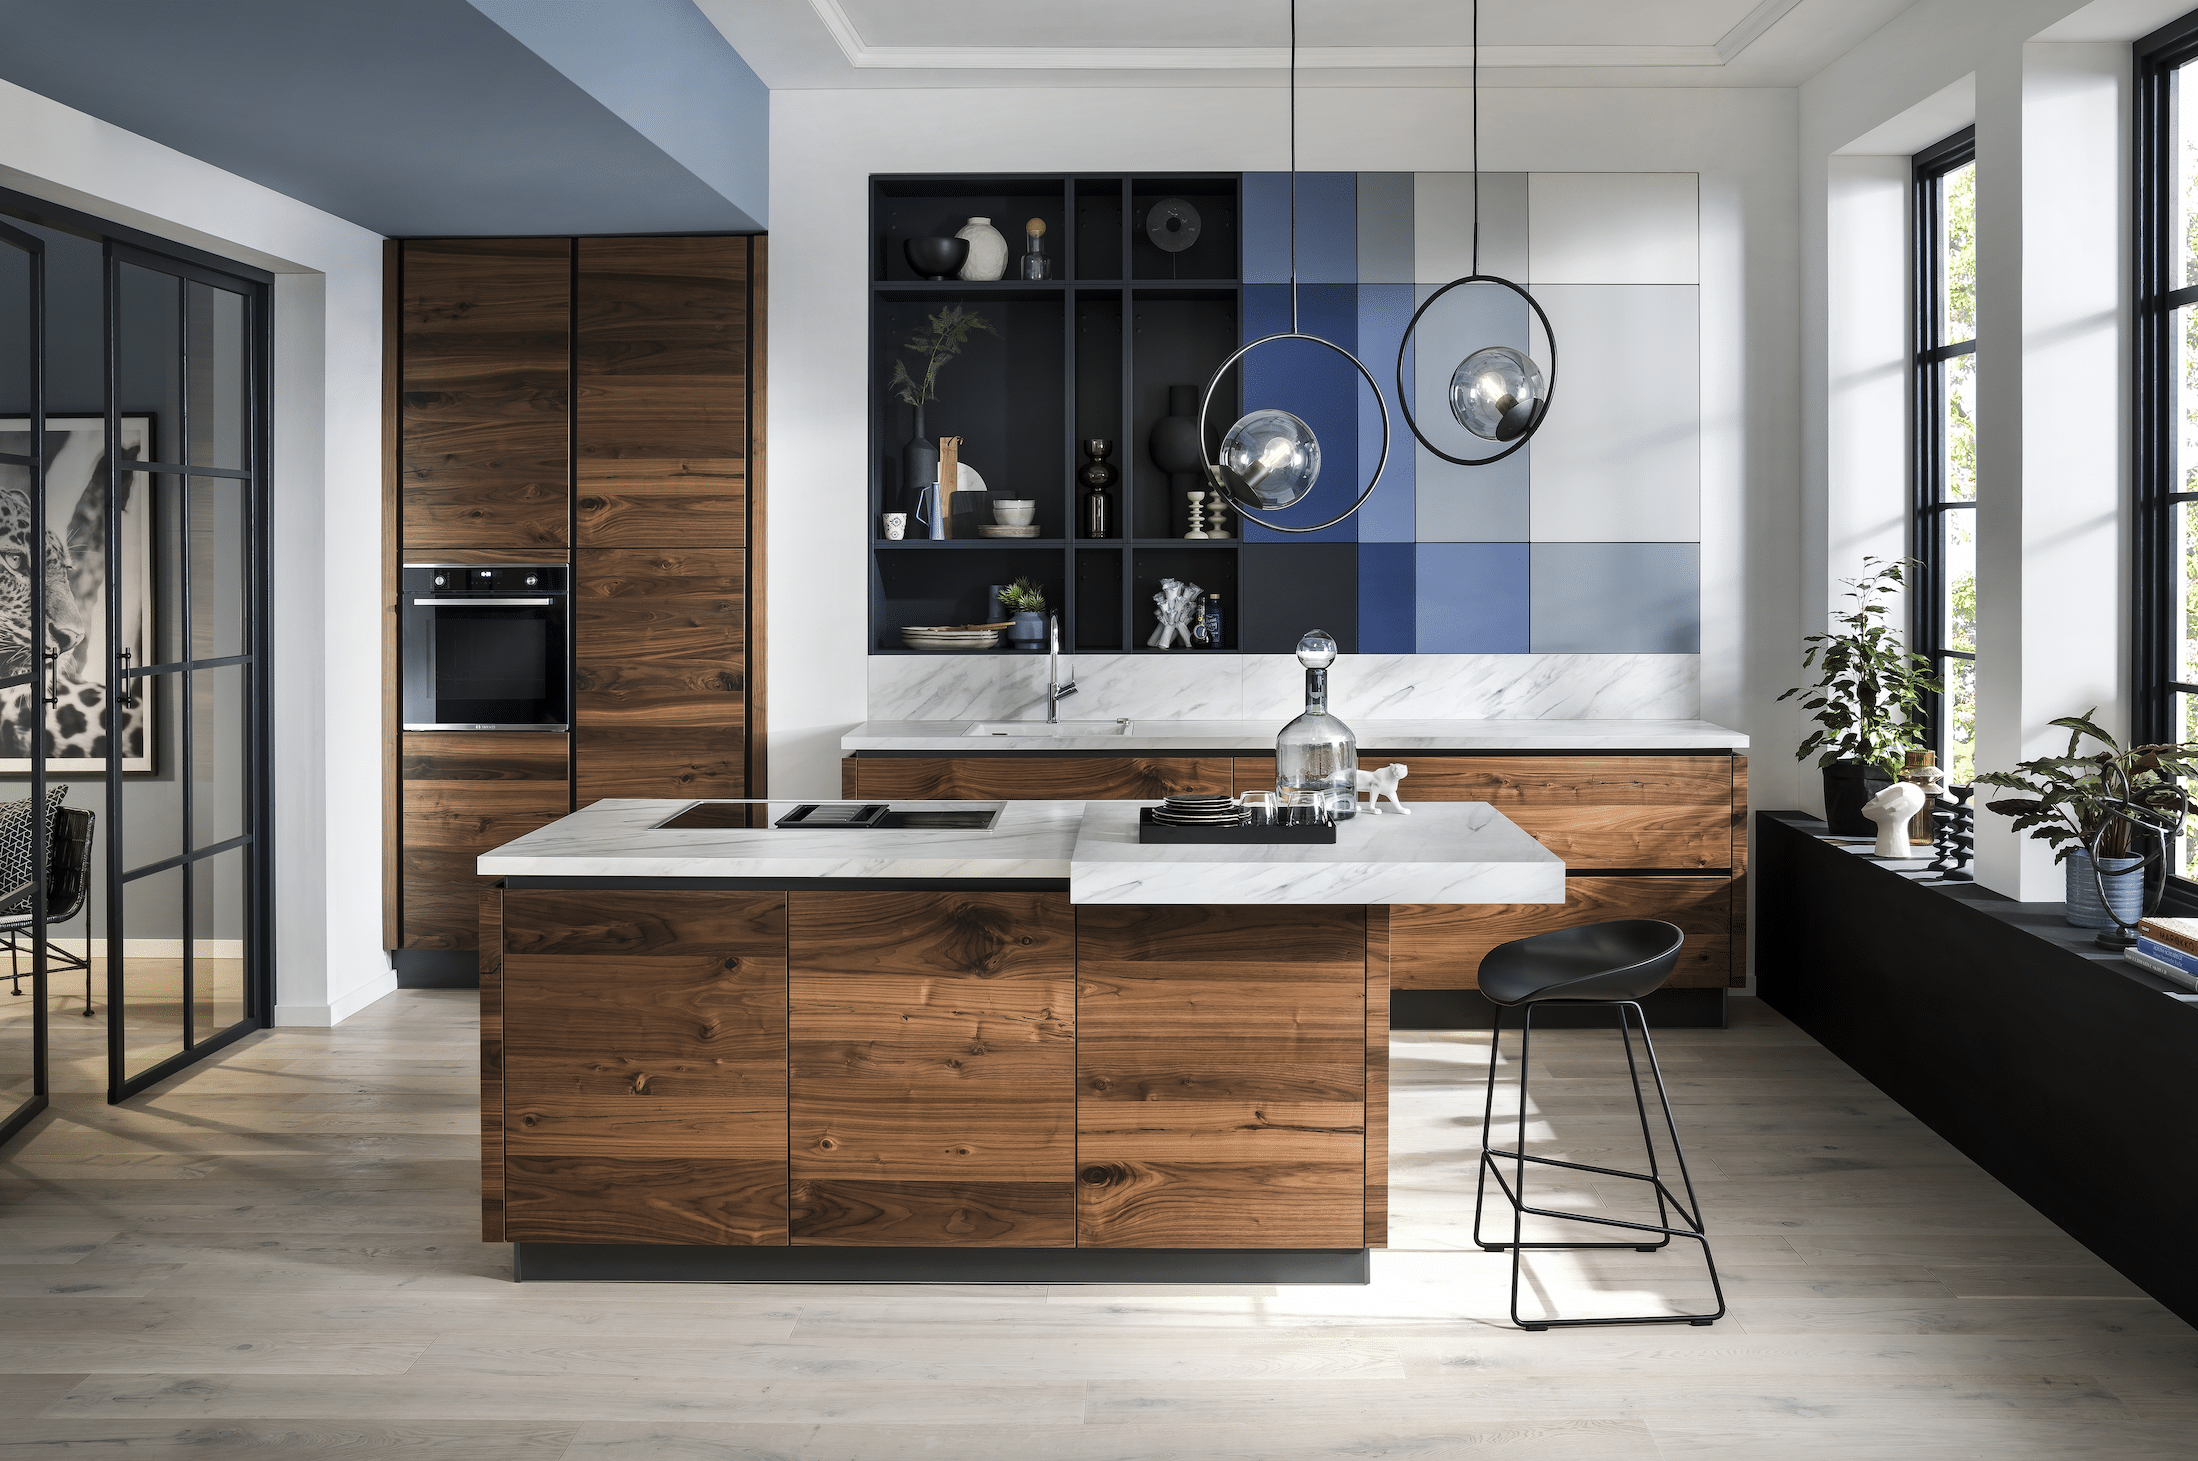 BÖHM MÖBEL zeigt eine Häcker Küche aus Holz, weißen Arbeitsplatten mit Marmorierung, blauen Elementen in der Wand und einem Barhocker.